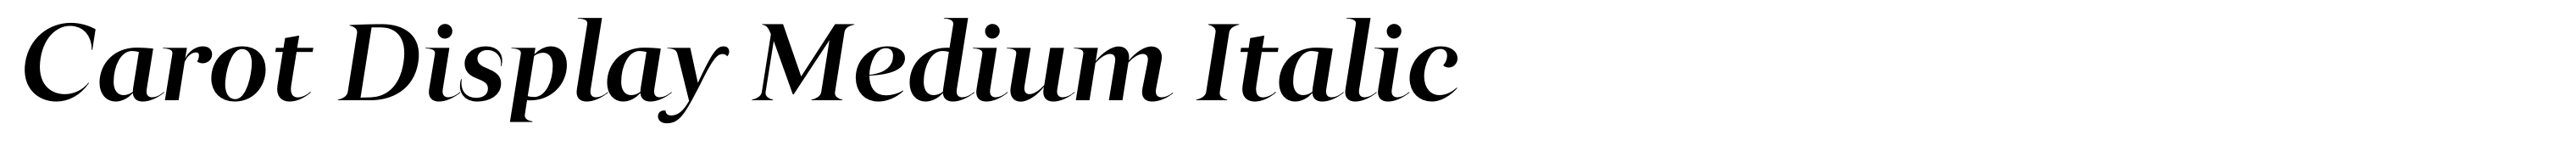 Carot Display Medium Italic